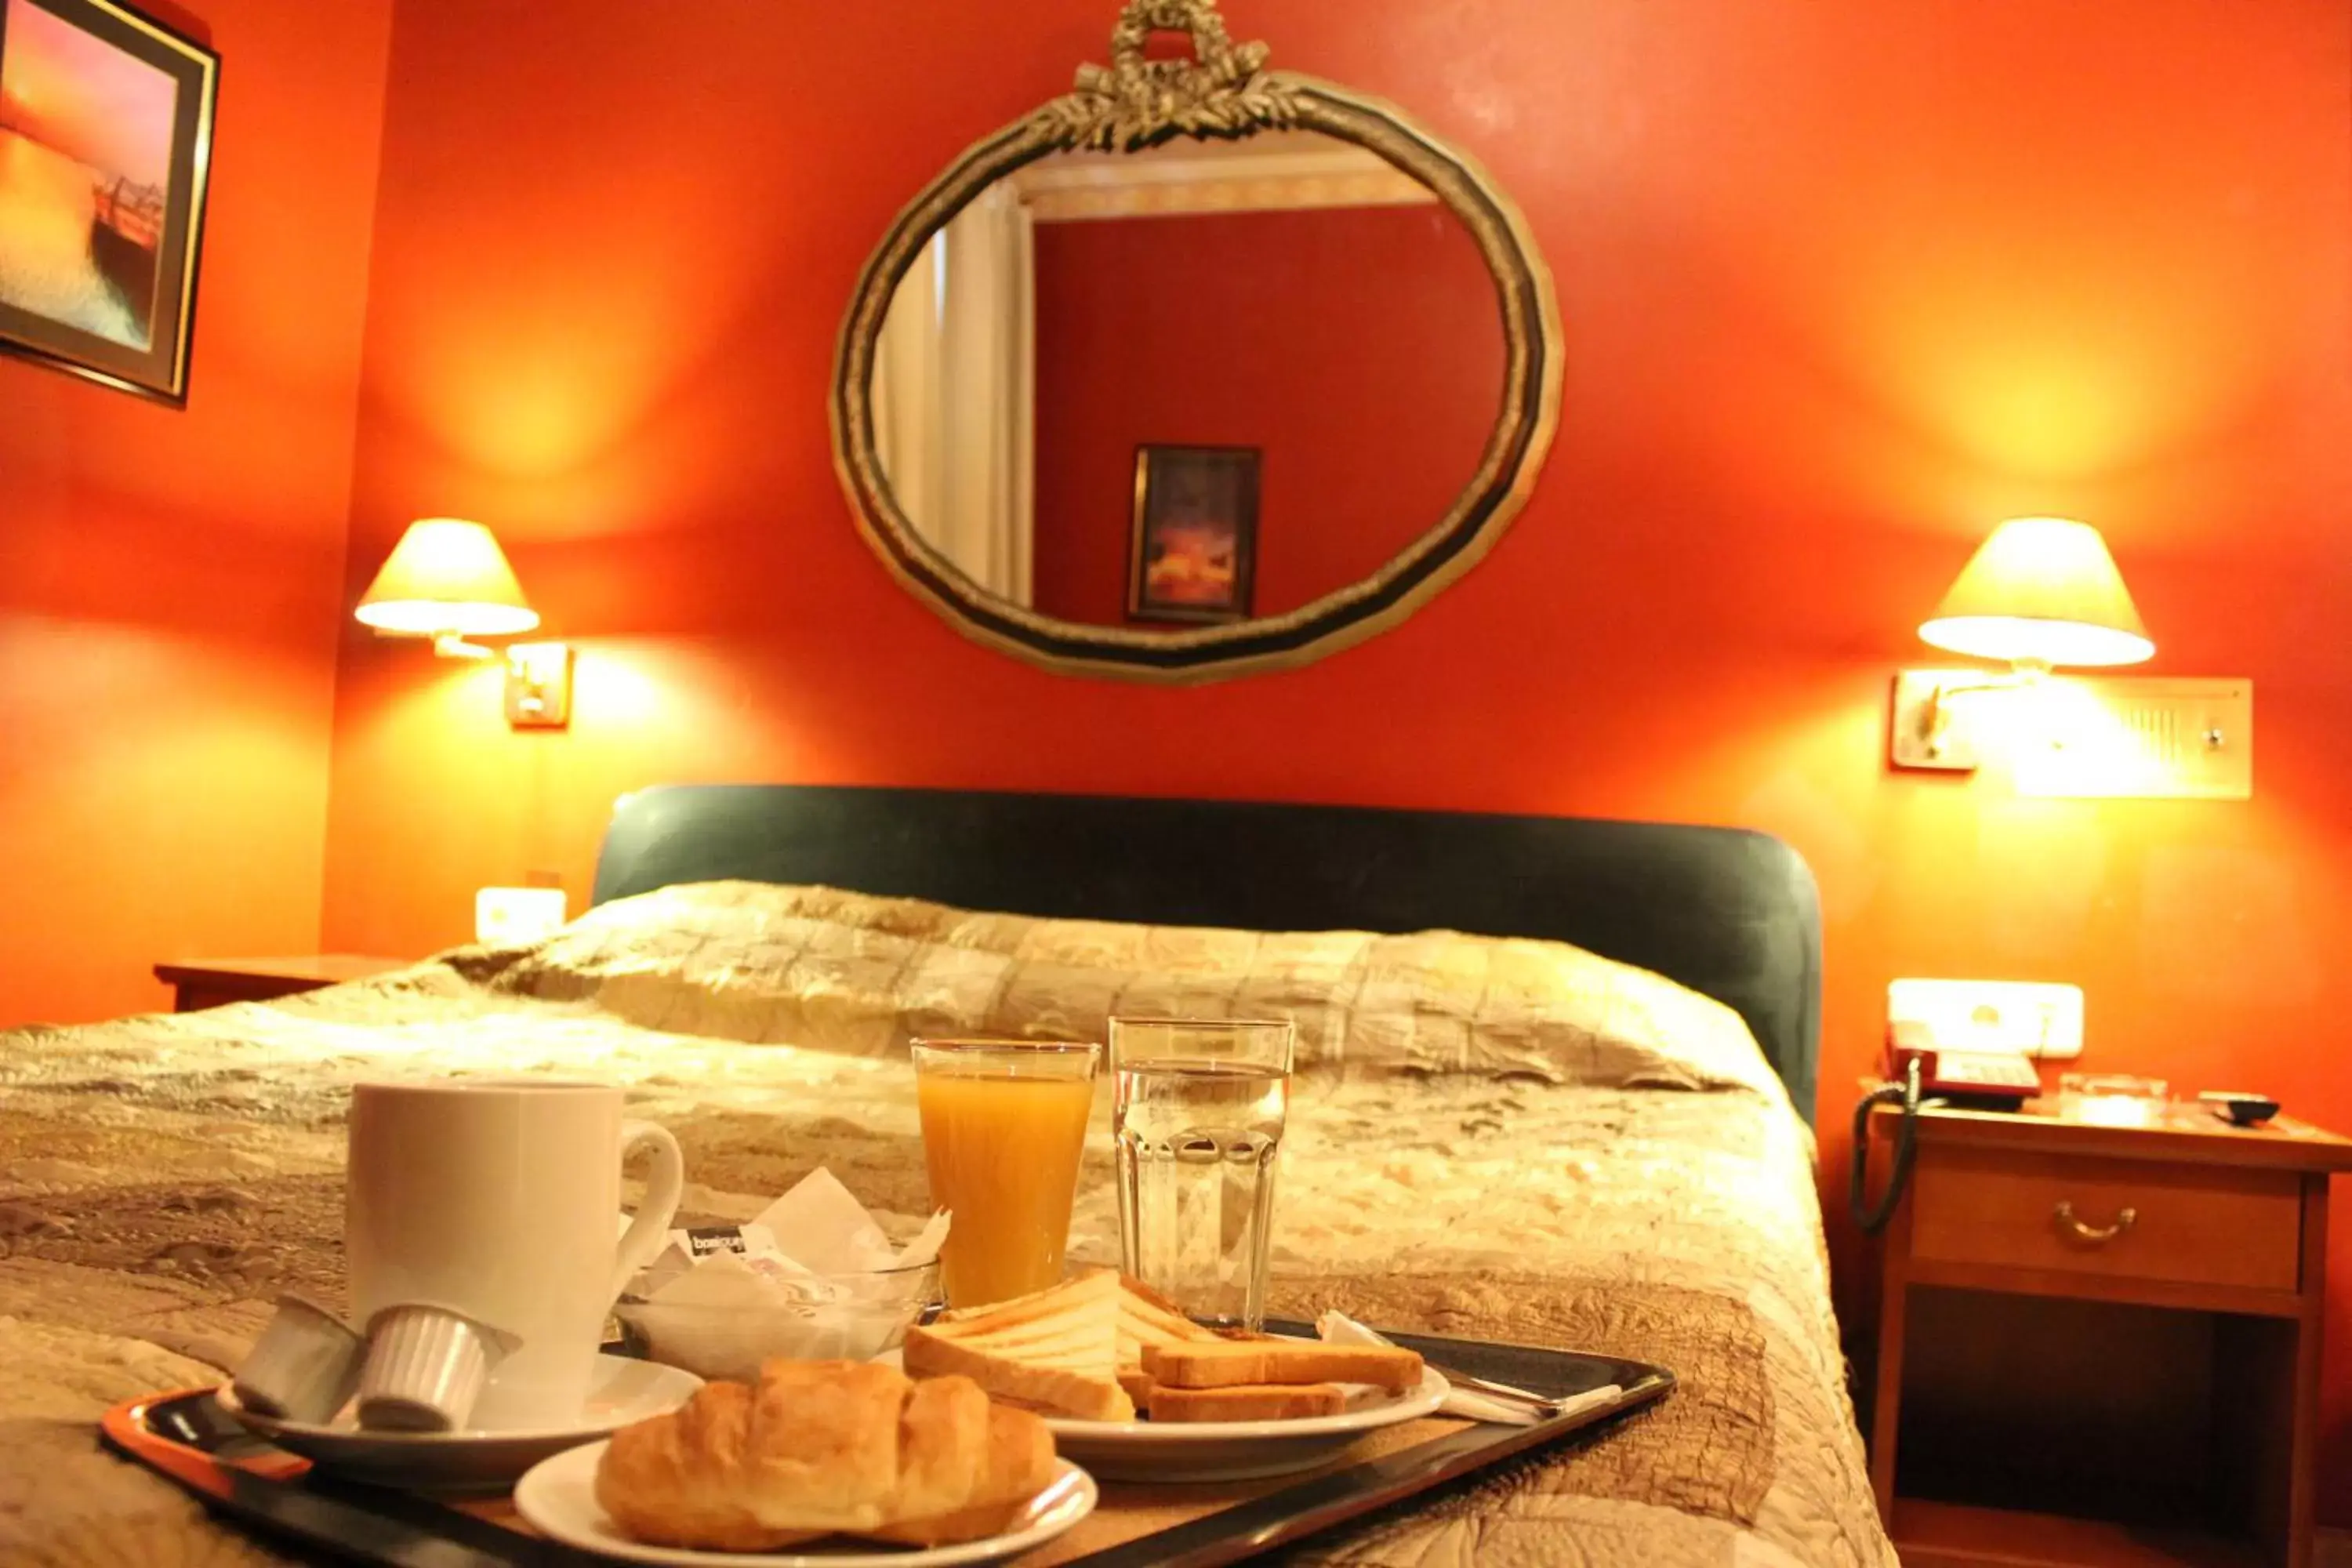 Breakfast, Bed in Exis Hotel